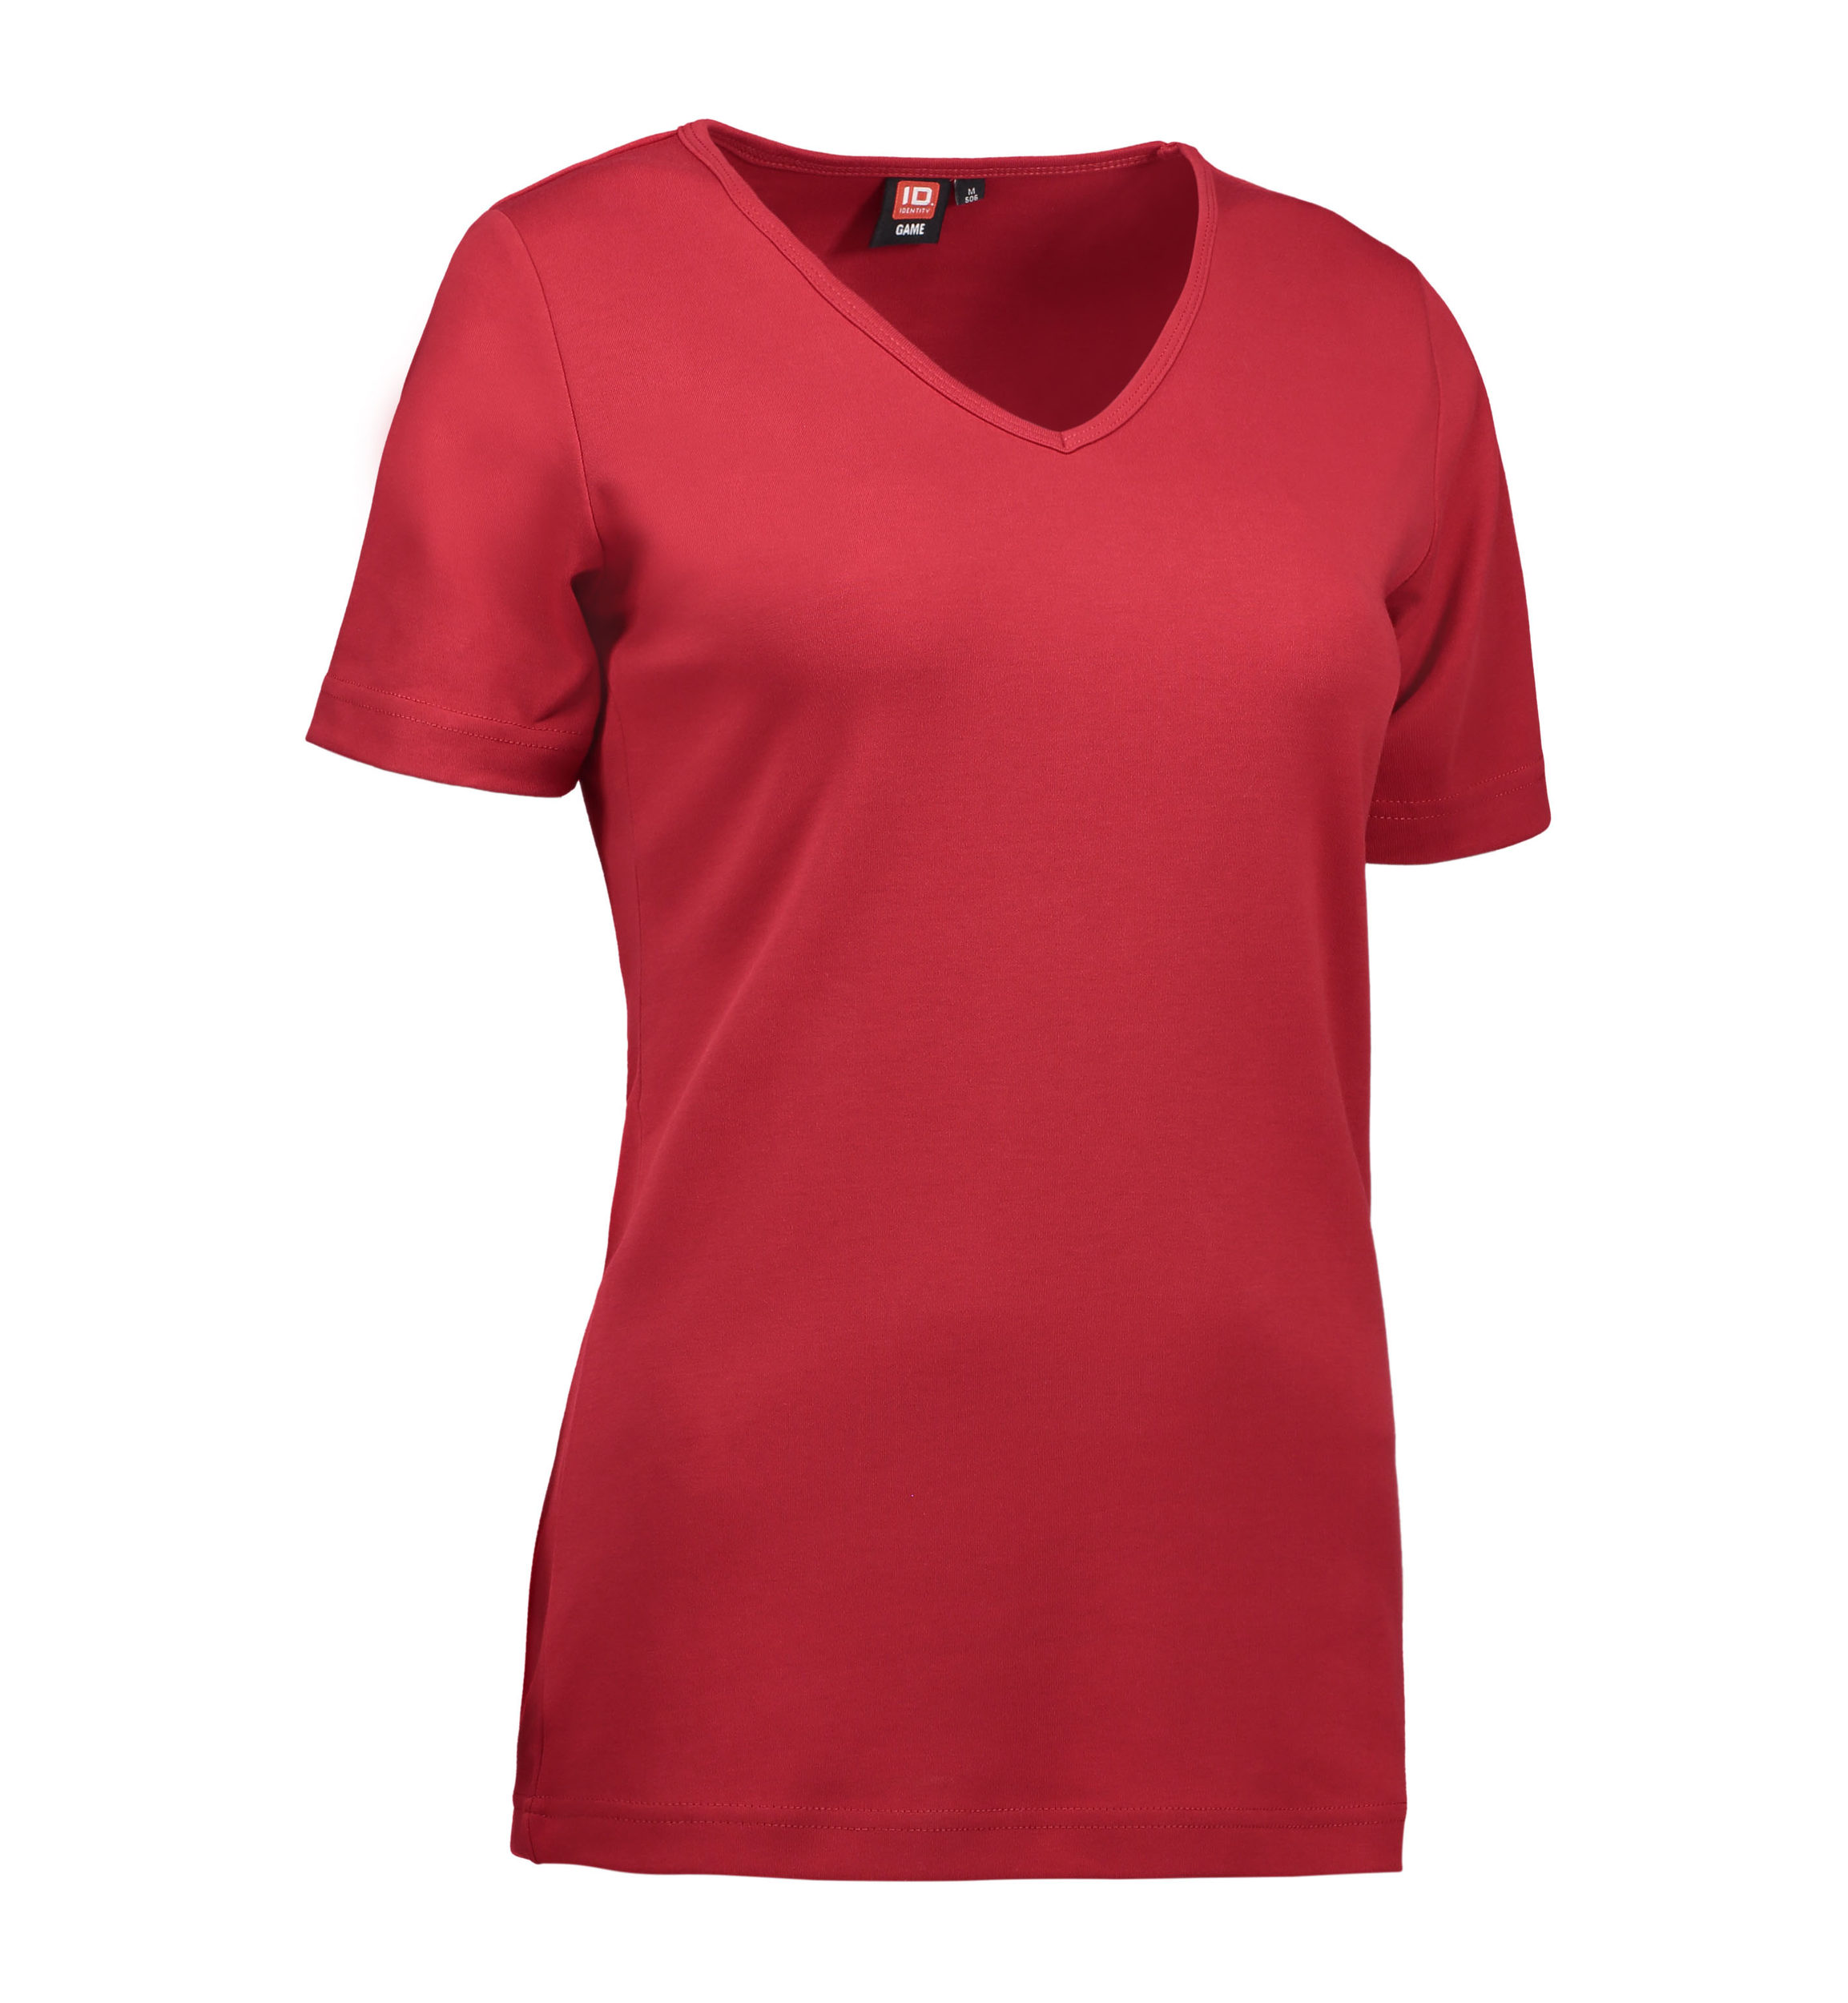 Billede af Dame t-shirt i rød med v-hals - S hos Sygeplejebutikken.dk